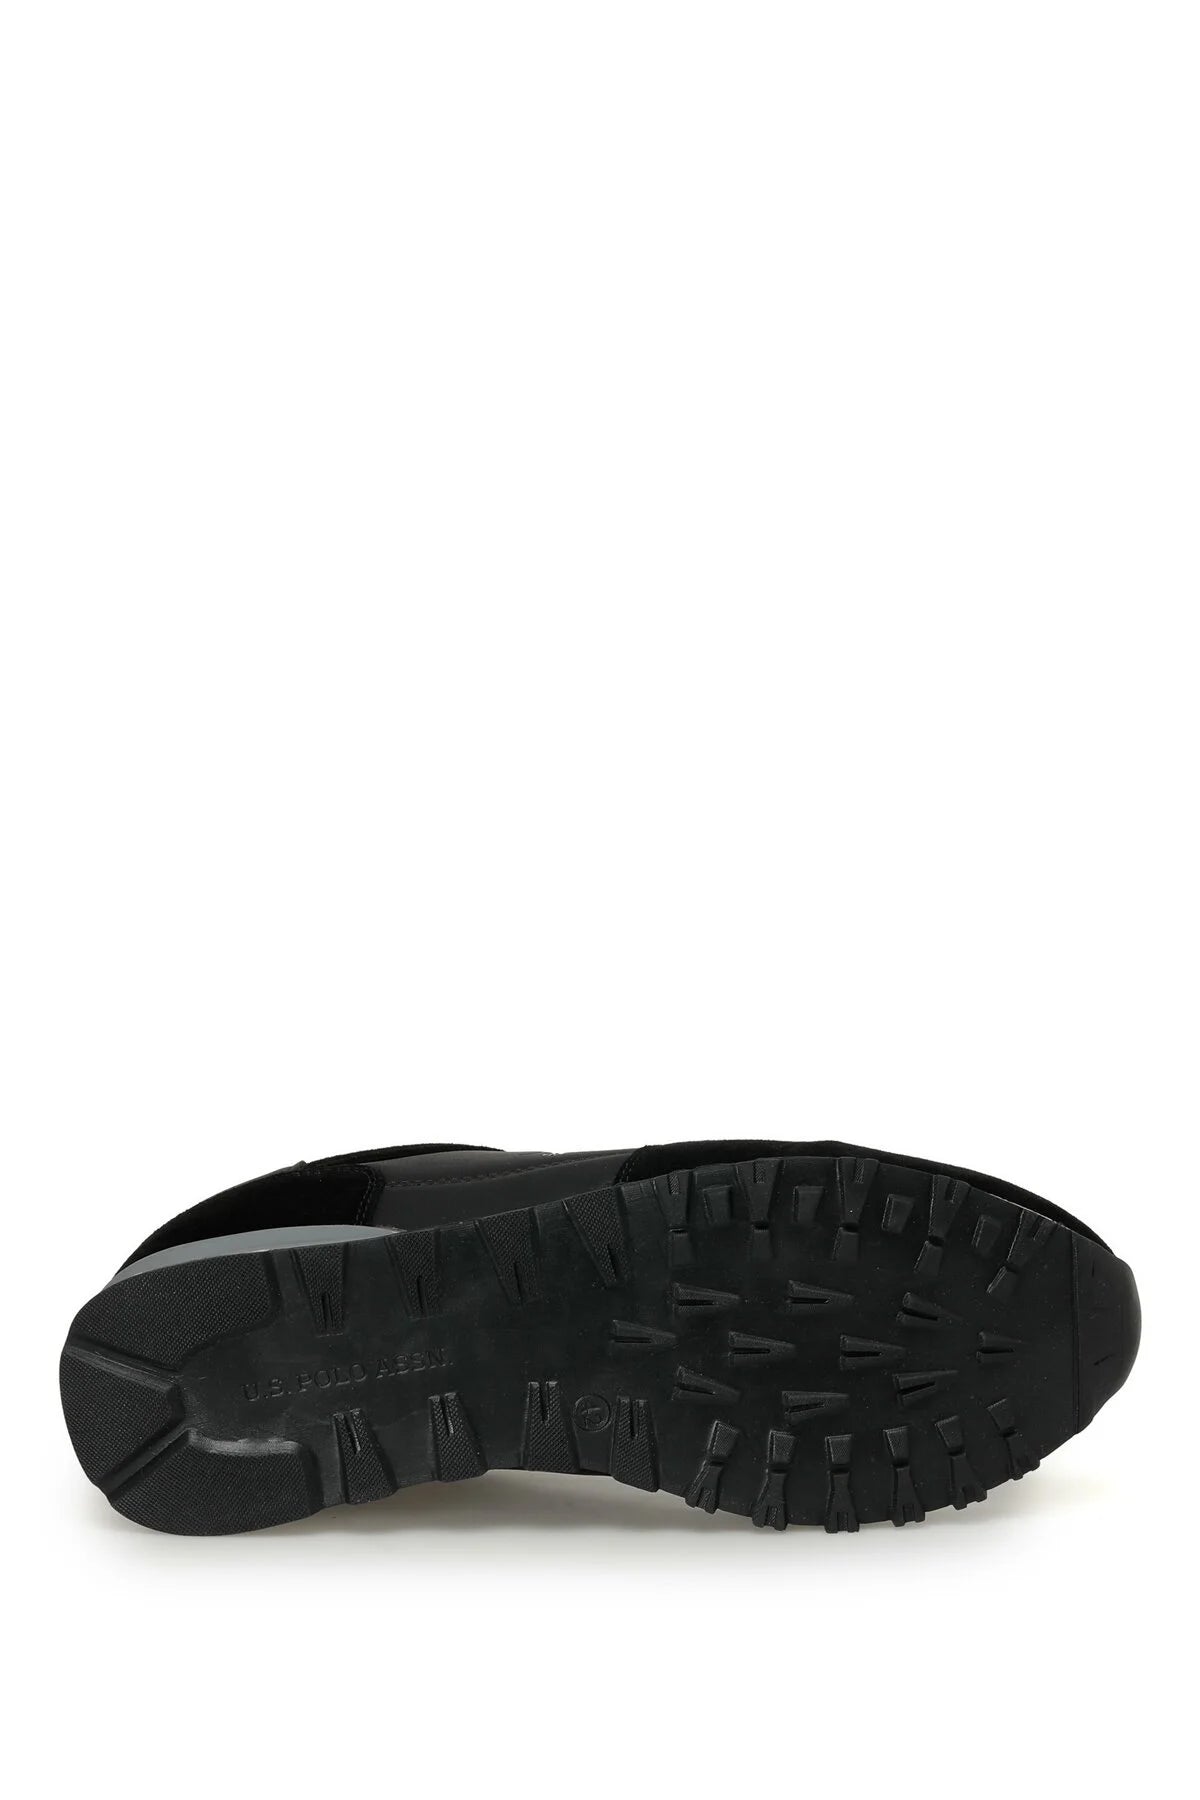 Chaussure CARLO 3PR Noire Pour Homme - 101399315